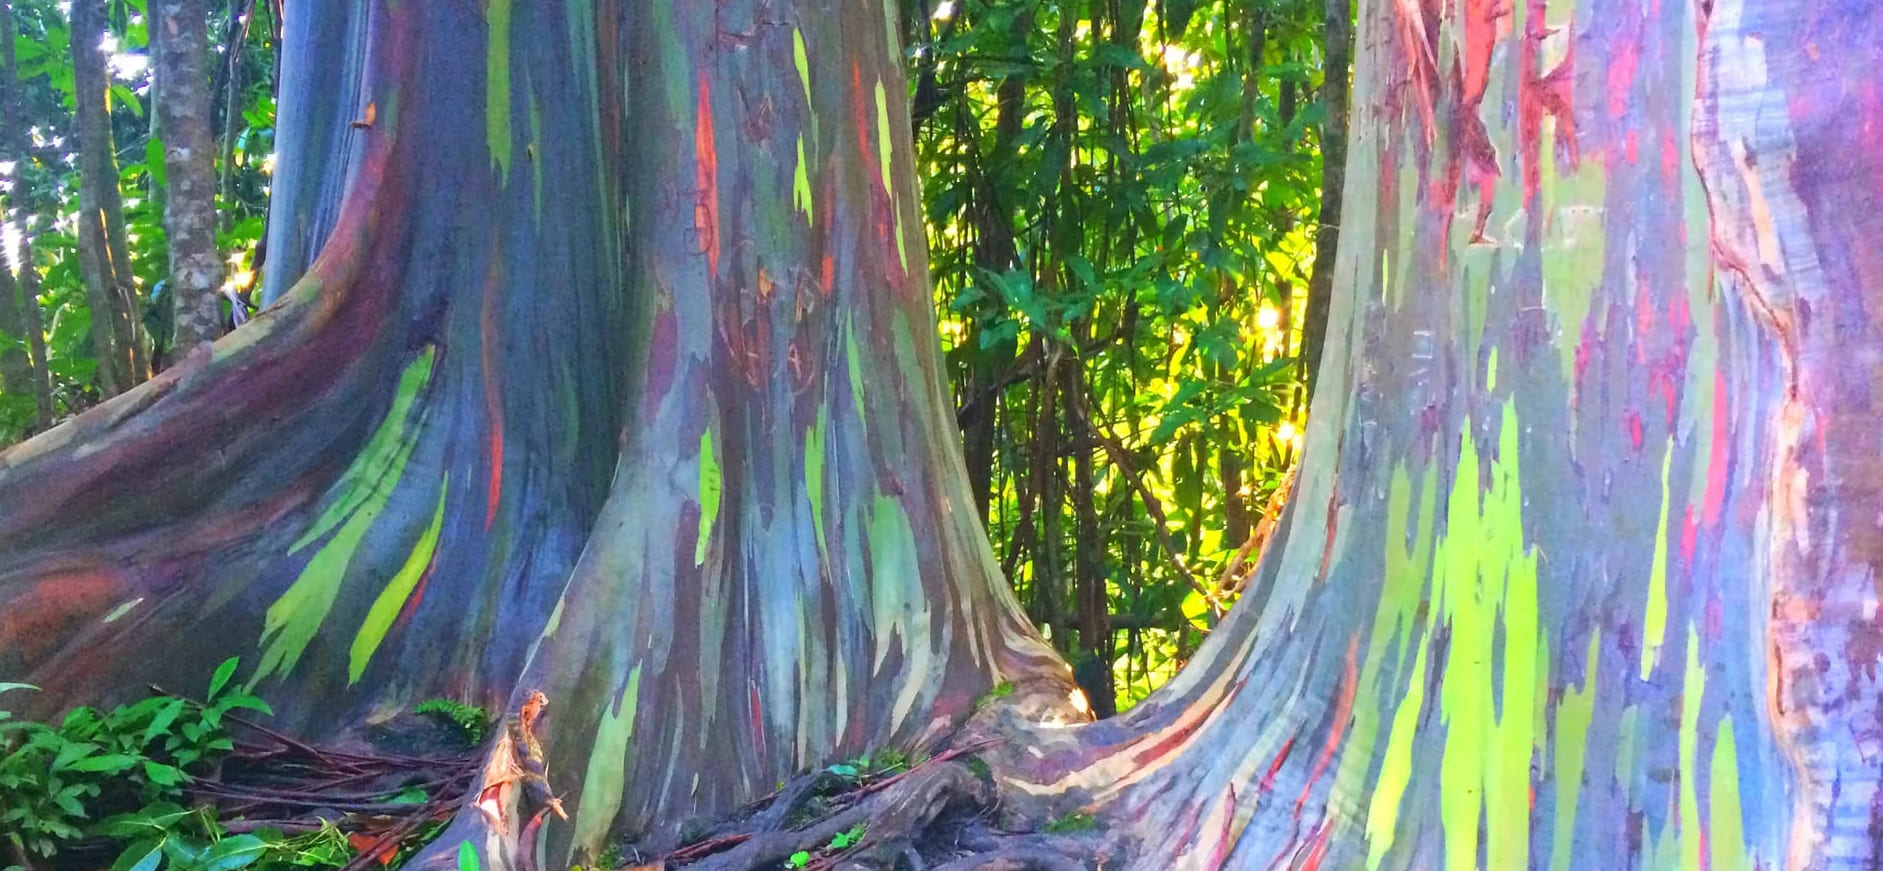 Sateenkaari-eukalyptuspuut ovat epätodellisen kauniita